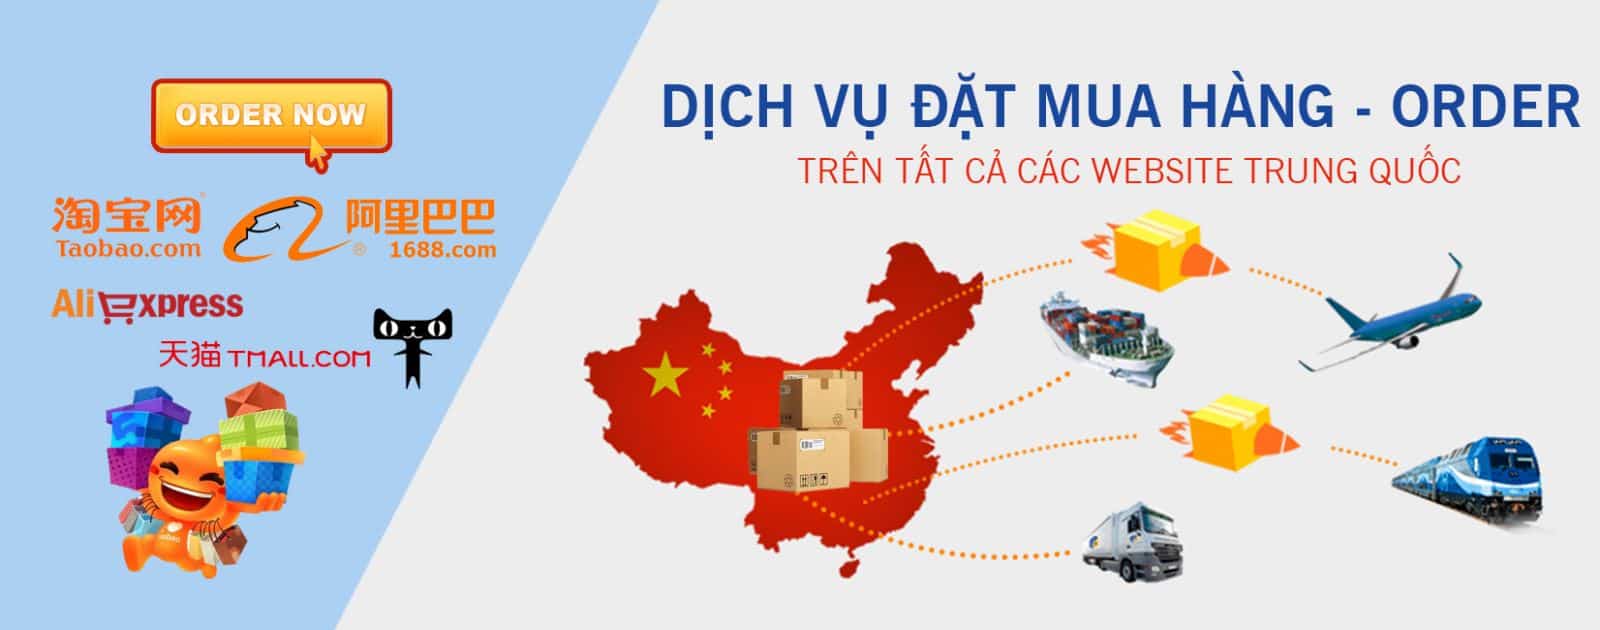 Vận chuyển hàng Trung Quốc tại Đà Nẵng